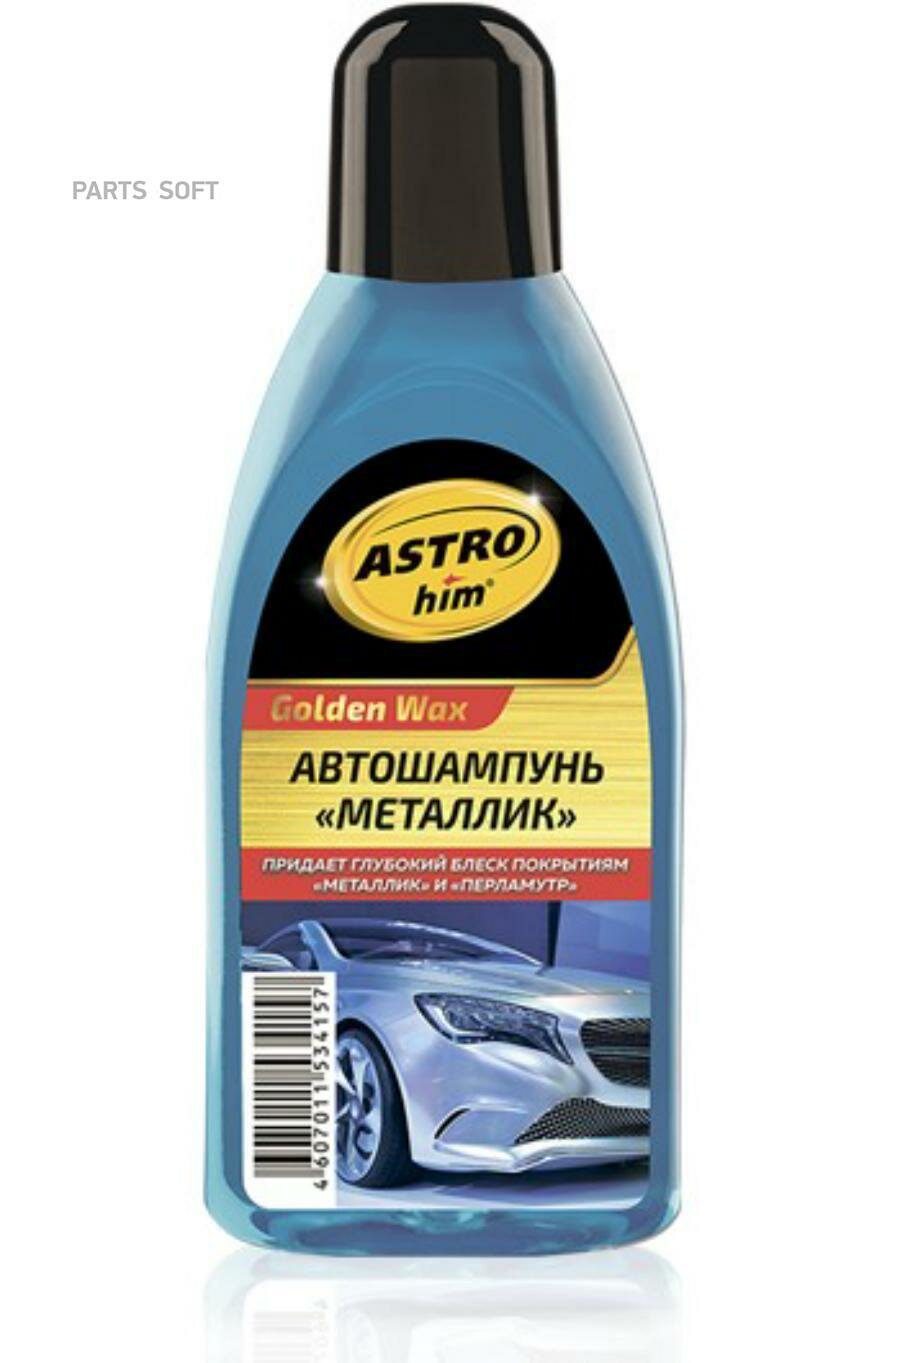 ASTROHIM AC307 Автошампунь "Металлик", серия Golden Wax 500 мл ASTROhim AC307